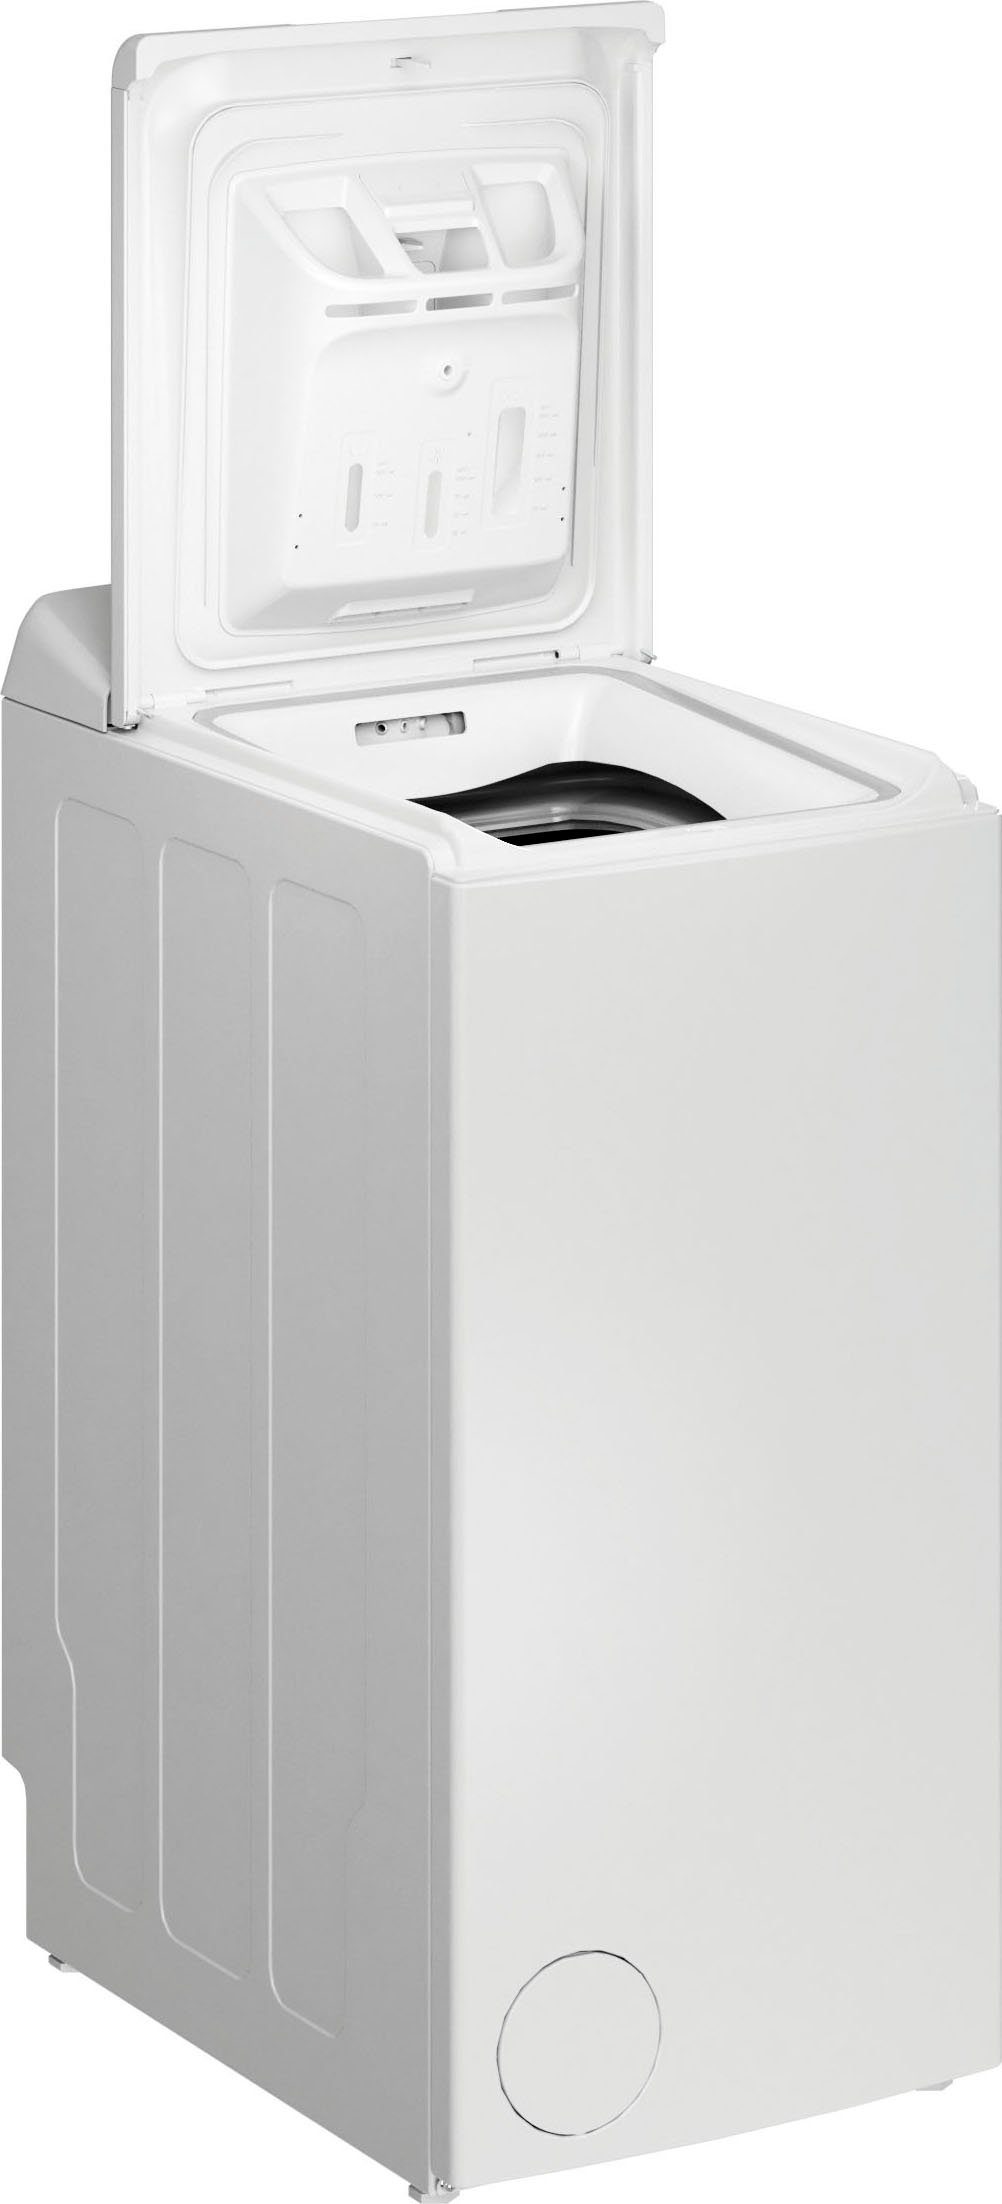 Privileg Waschmaschine U/min 1100 DE, LD55 Toplader 5,5 PWT kg